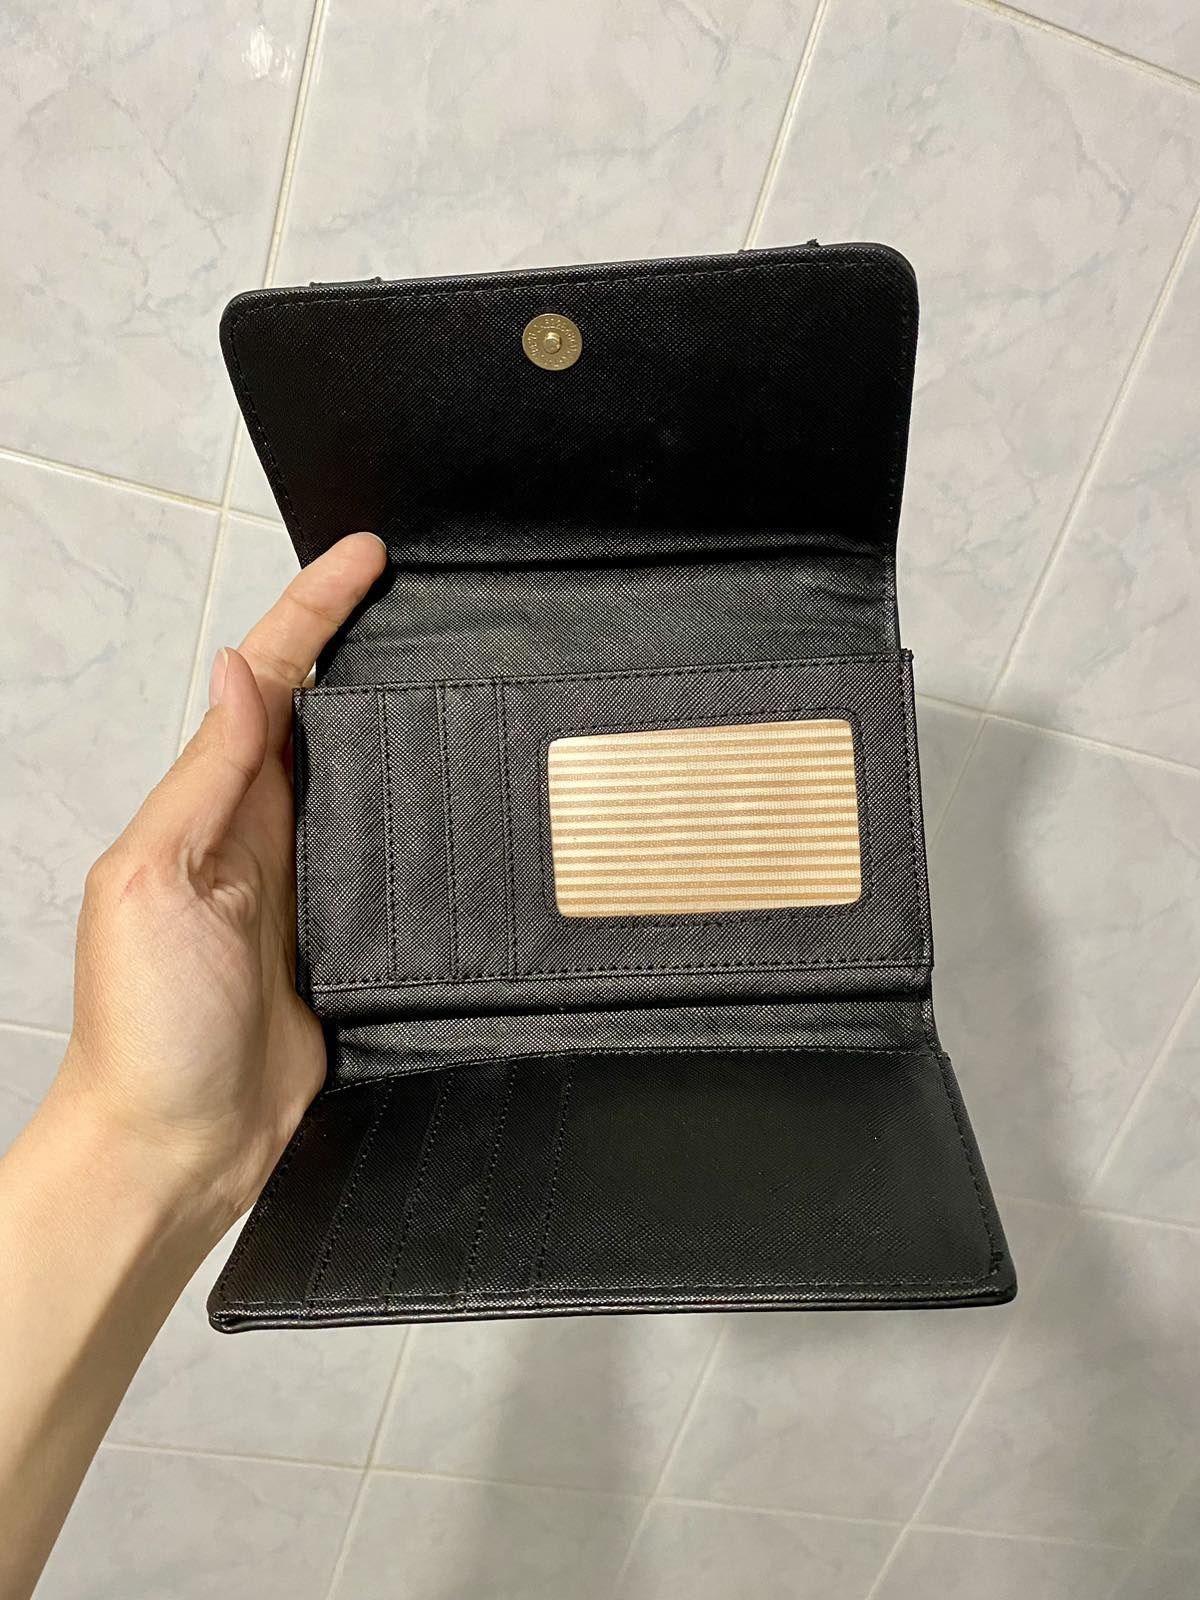 Качественный черный кошелек из эко кожи, якiсний гаманець